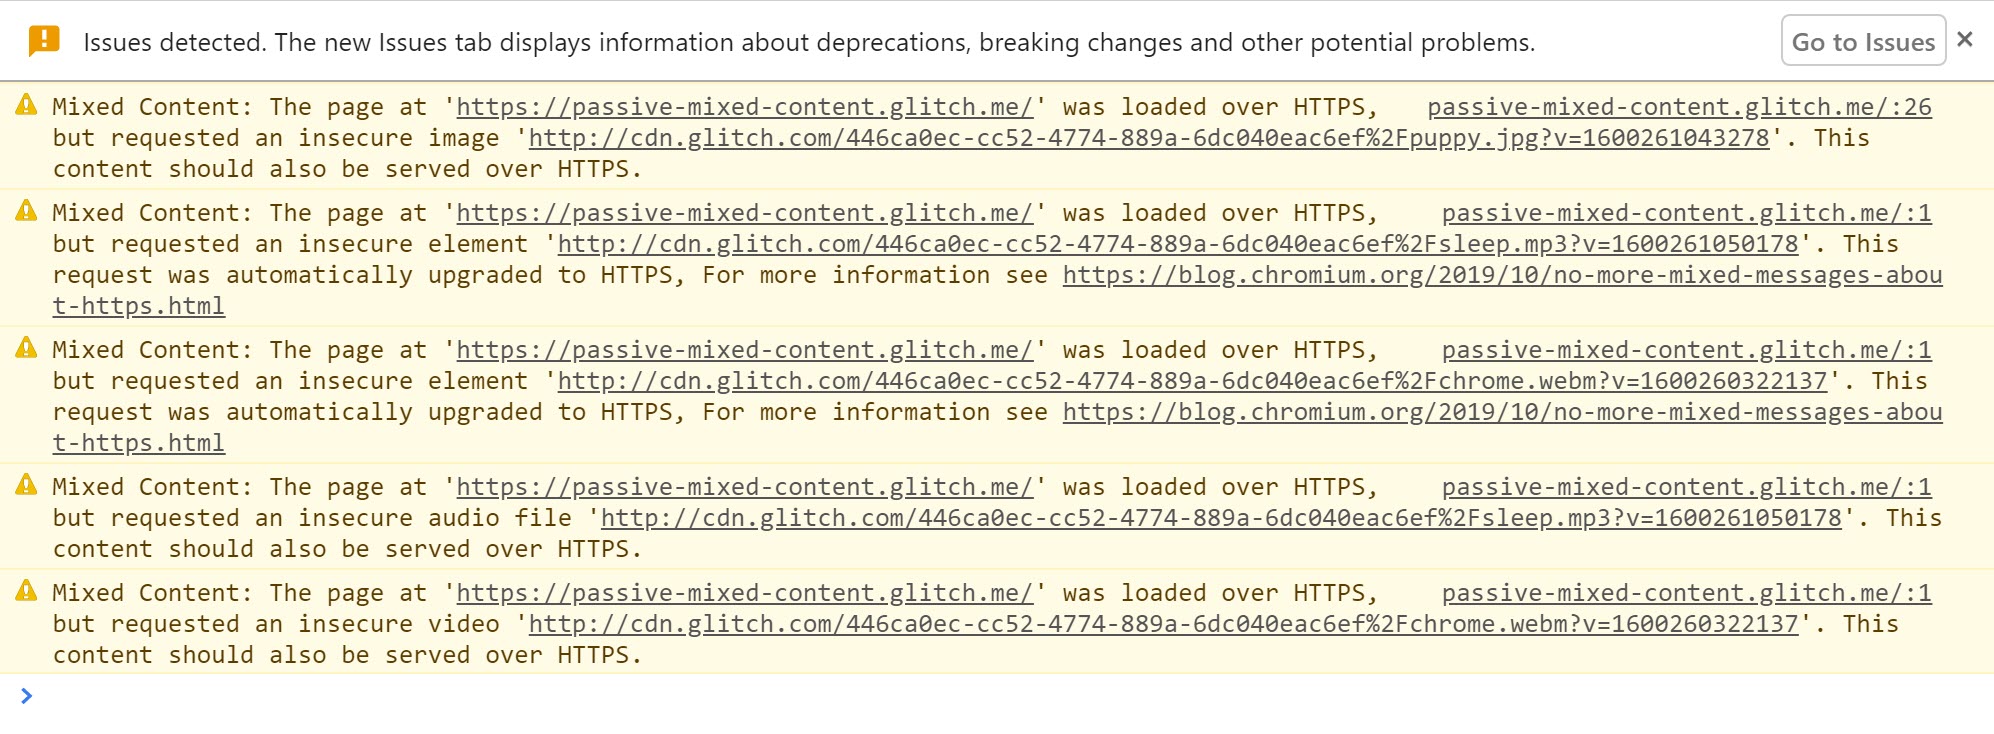 Chrome DevTools mostrando os avisos exibidos quando conteúdo misto é detectado e atualizado